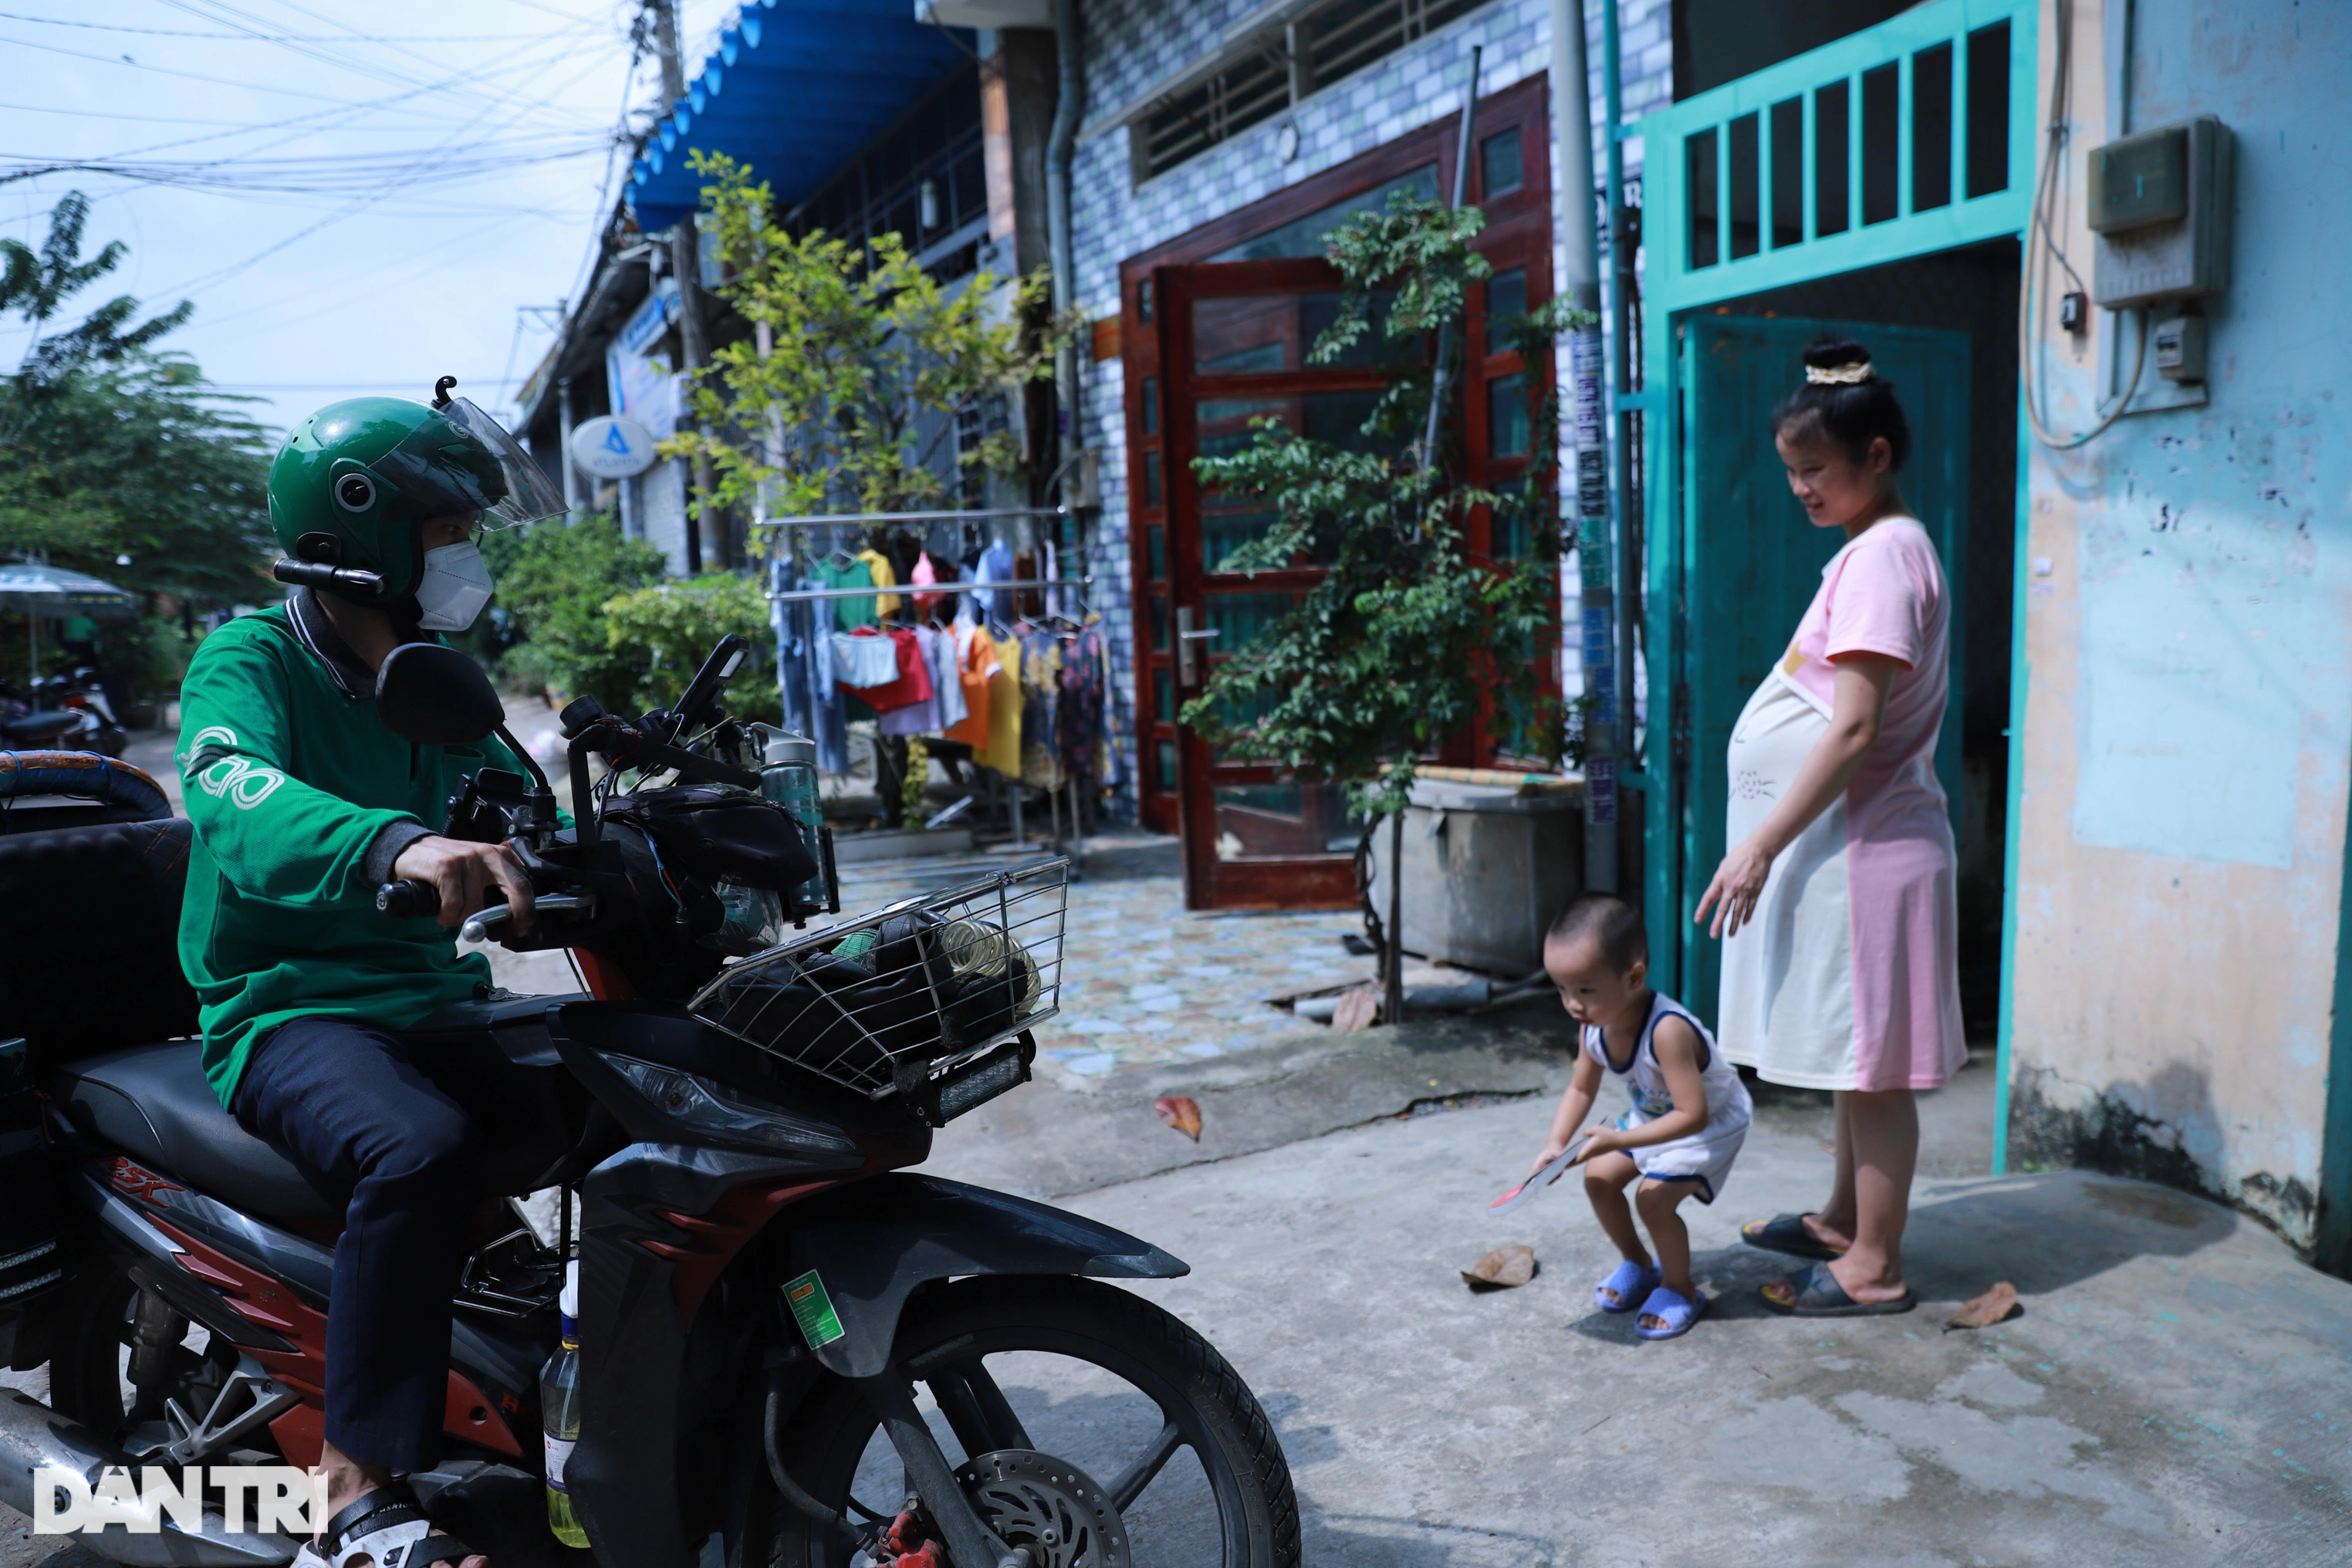 Vợ bầu sắp sinh, anh xe ôm vẫn đều đặn giúp đỡ nhiều người gặp nạn giữa đêm ở TPHCM - 14